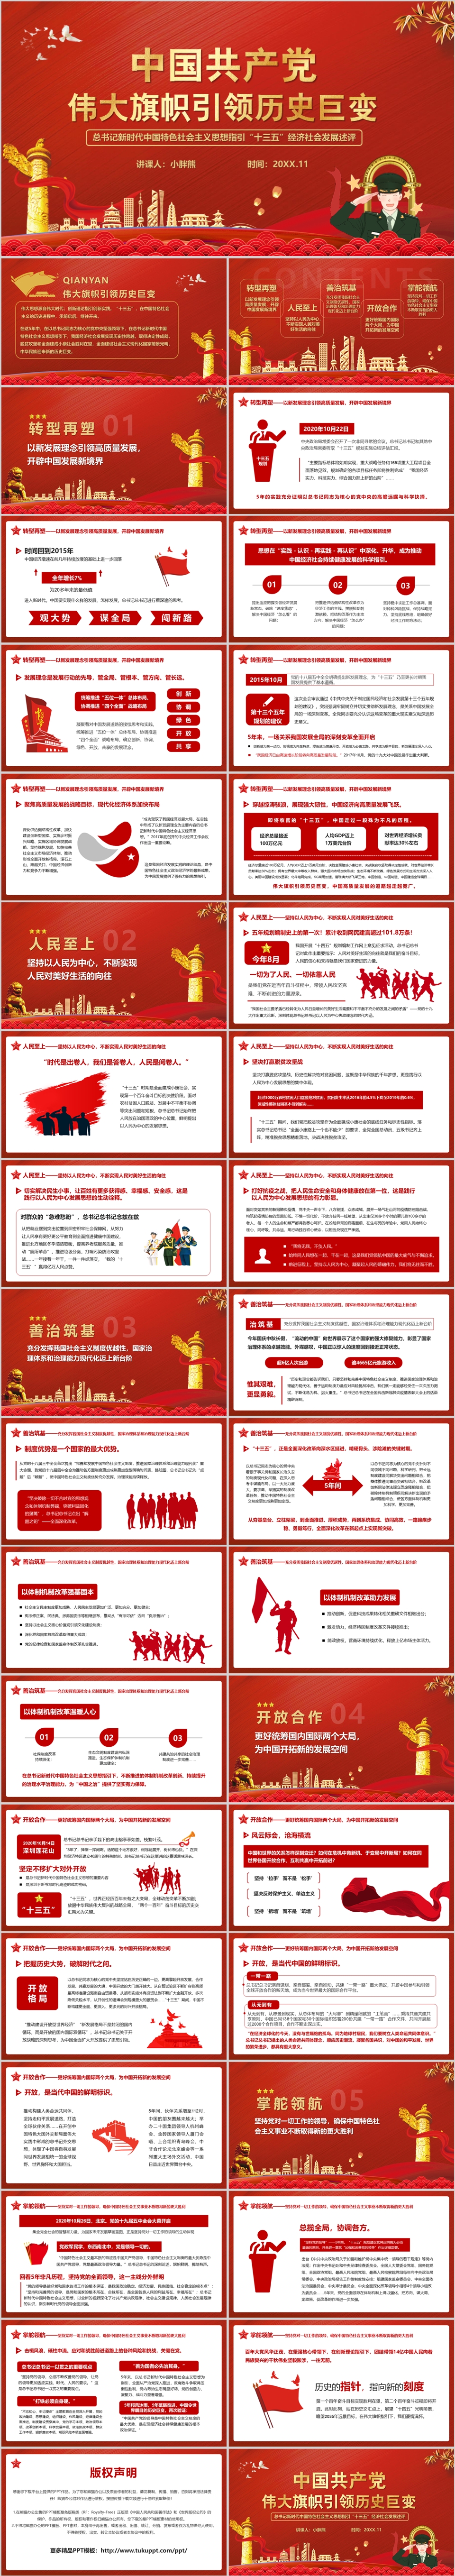 中国共产党伟大旗帜引领历史巨变十三五党课党政PPT模版